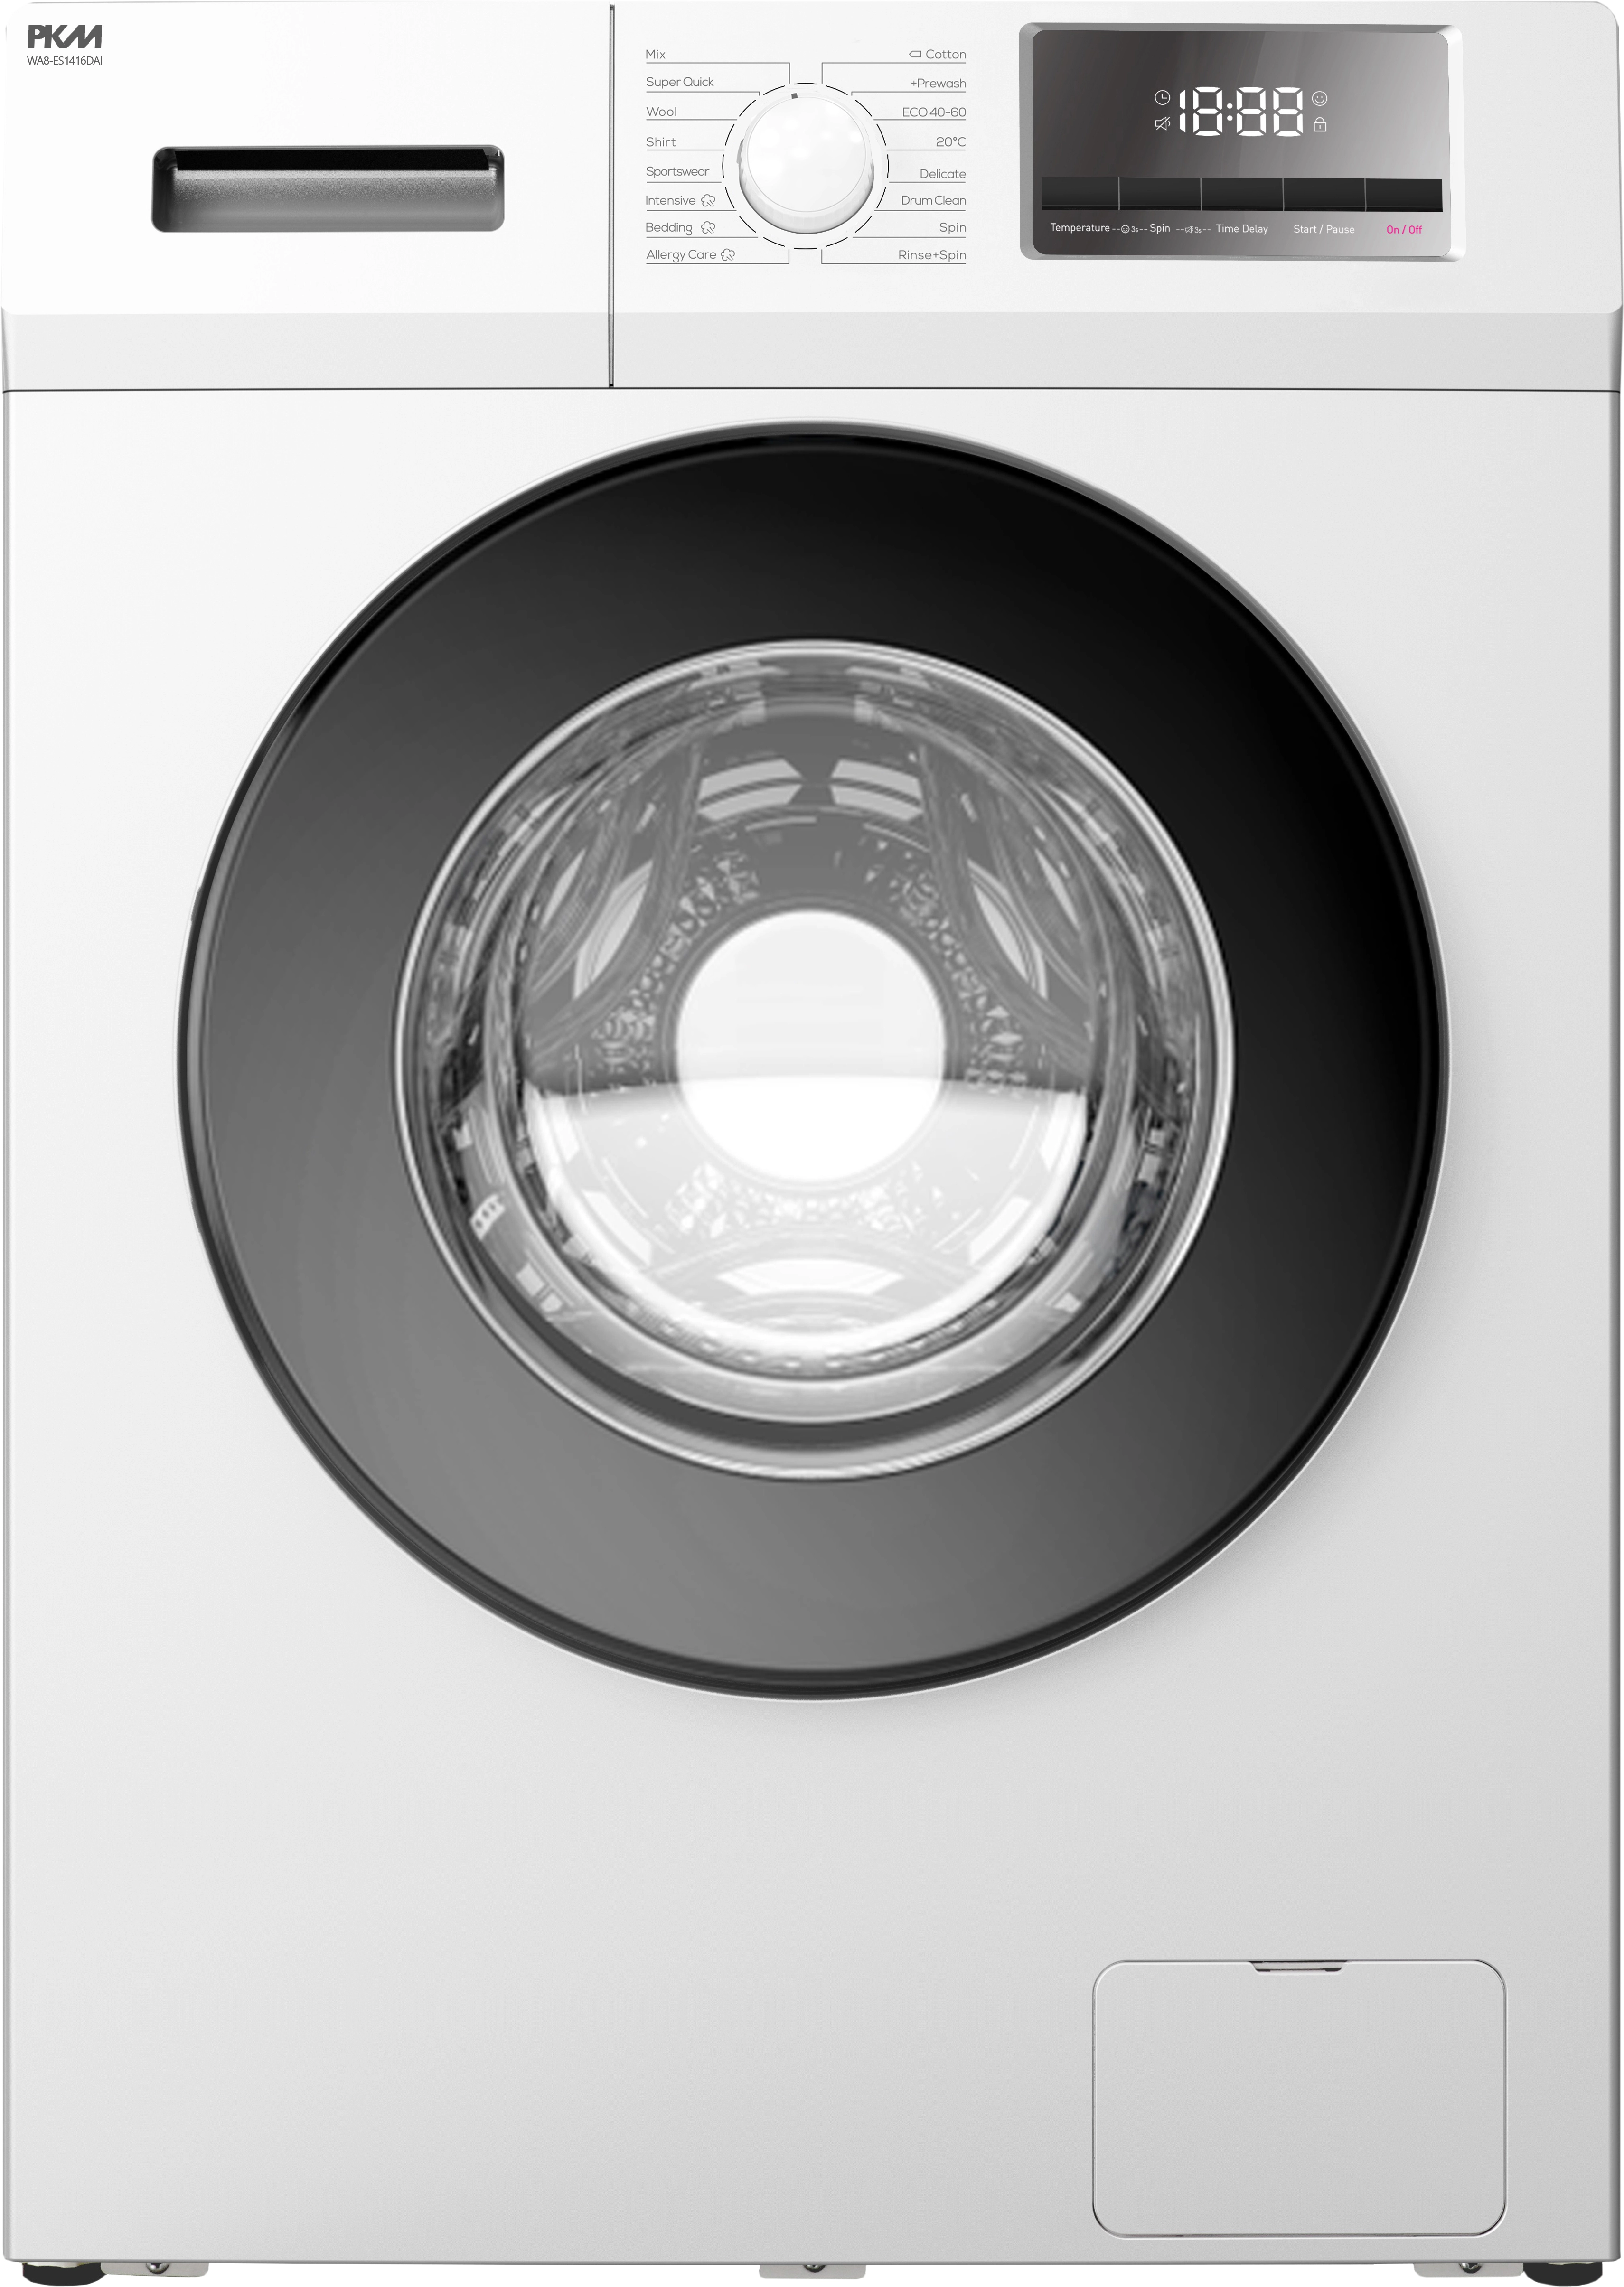 Waschmaschinen-Unterlage Regupol 6510G 60 cm x 60 cm x 1 cm